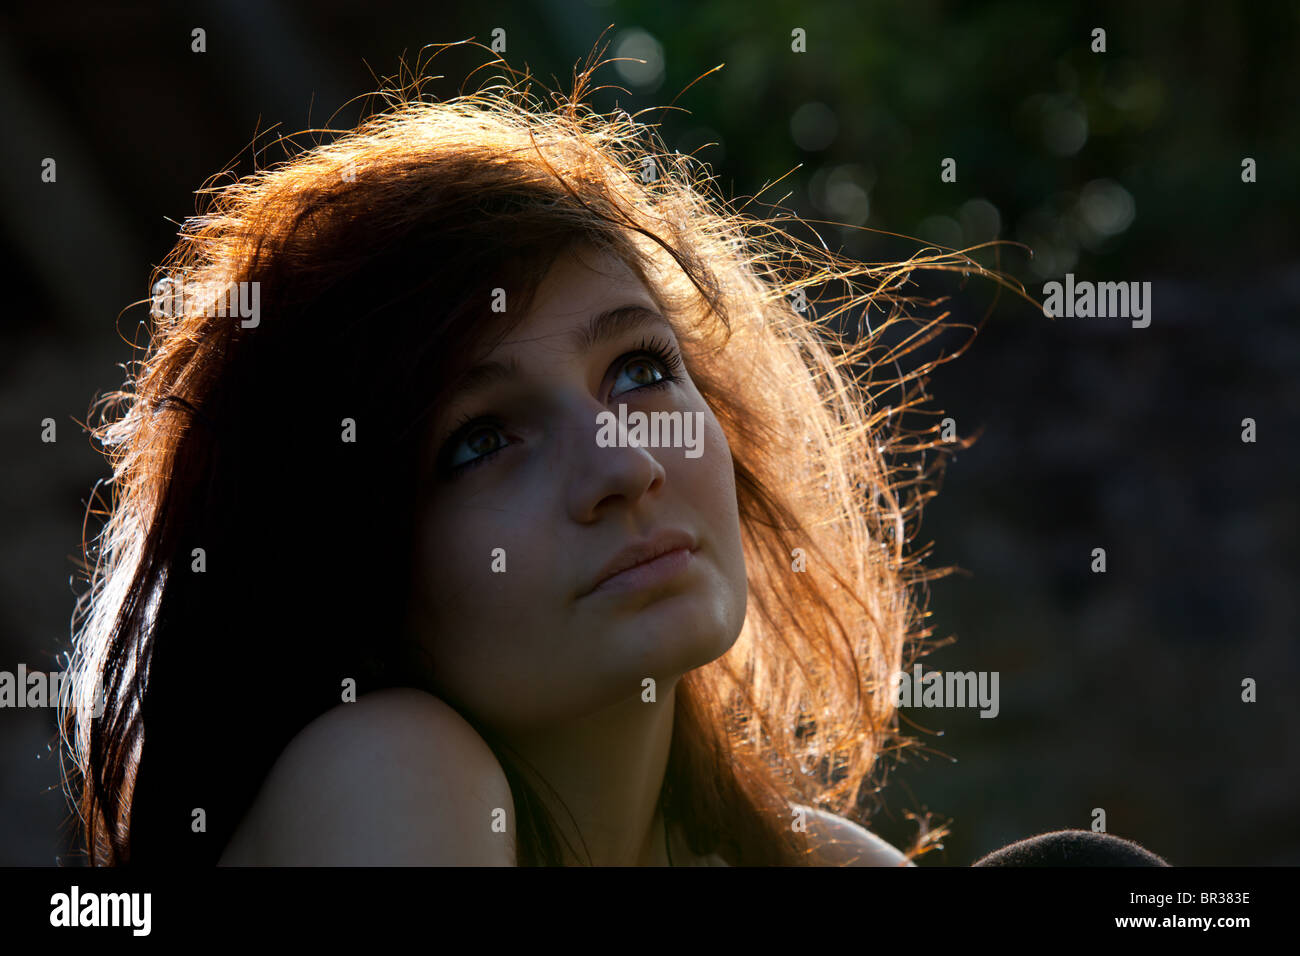 Headshot / Ritratto di un attraente dai capelli scuri giovane donna utilizzando il sole come retroilluminazione Foto Stock